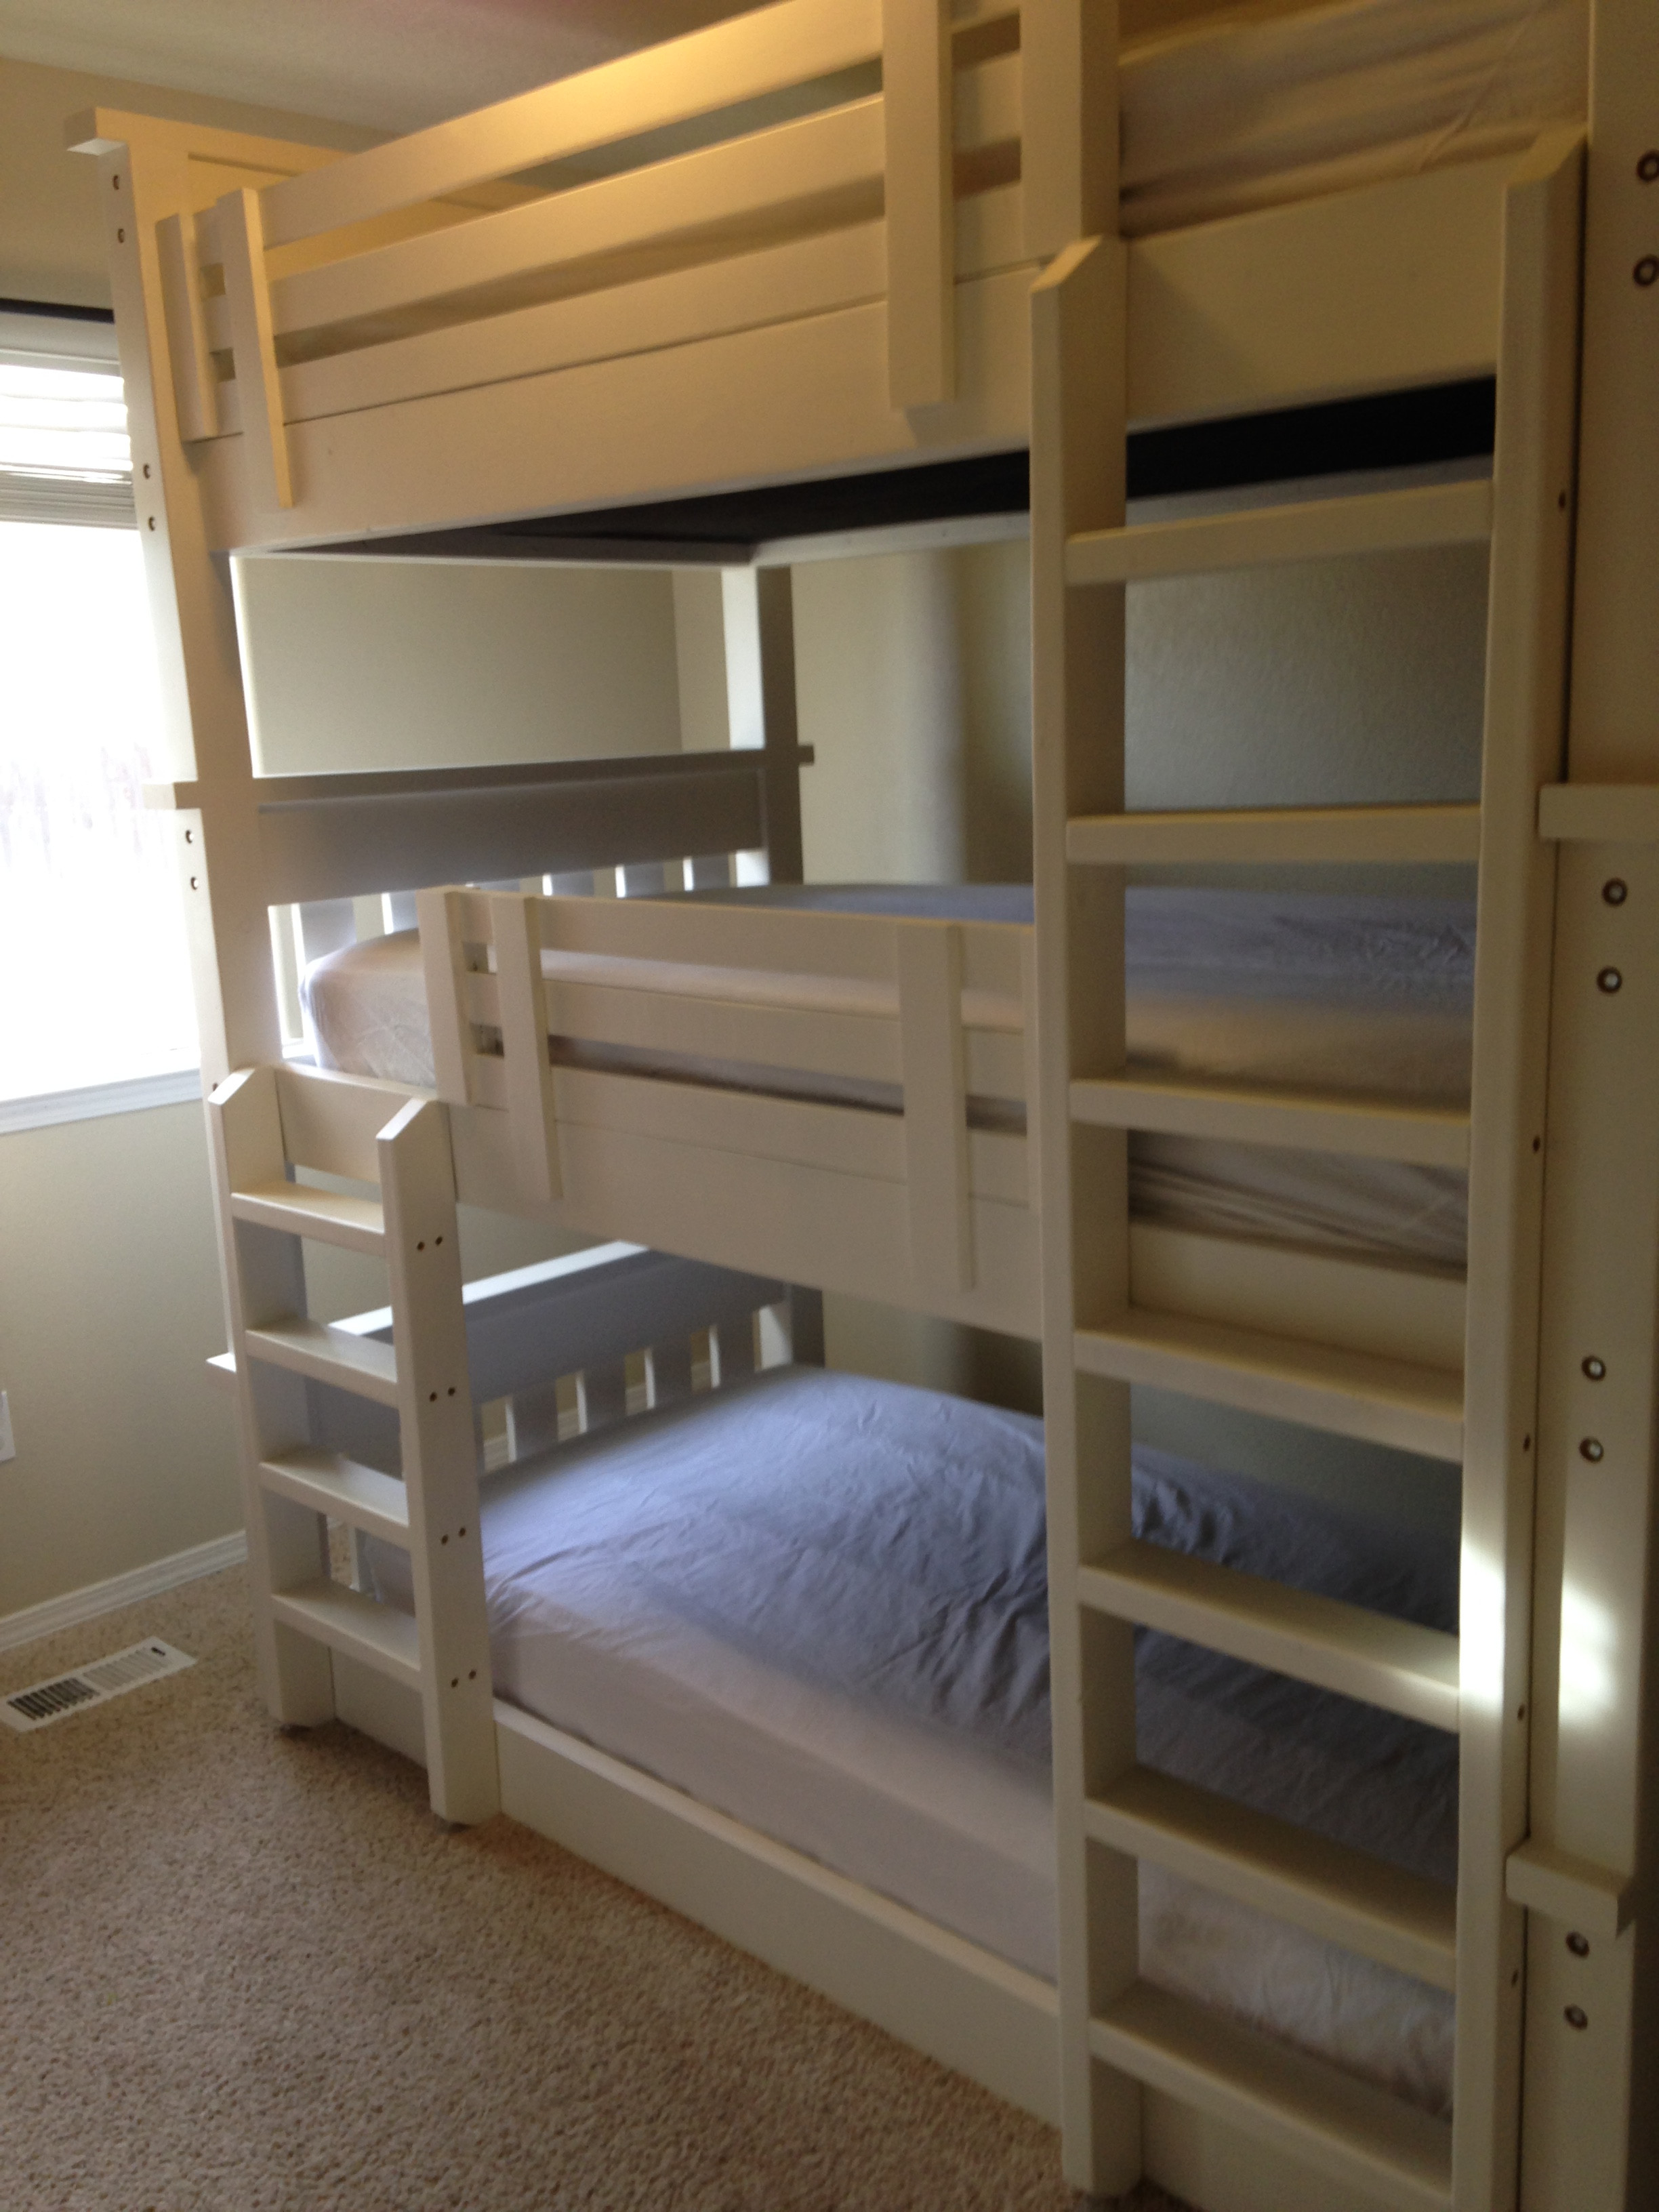 DIY Triple Bunk Beds Plans
 Ana White